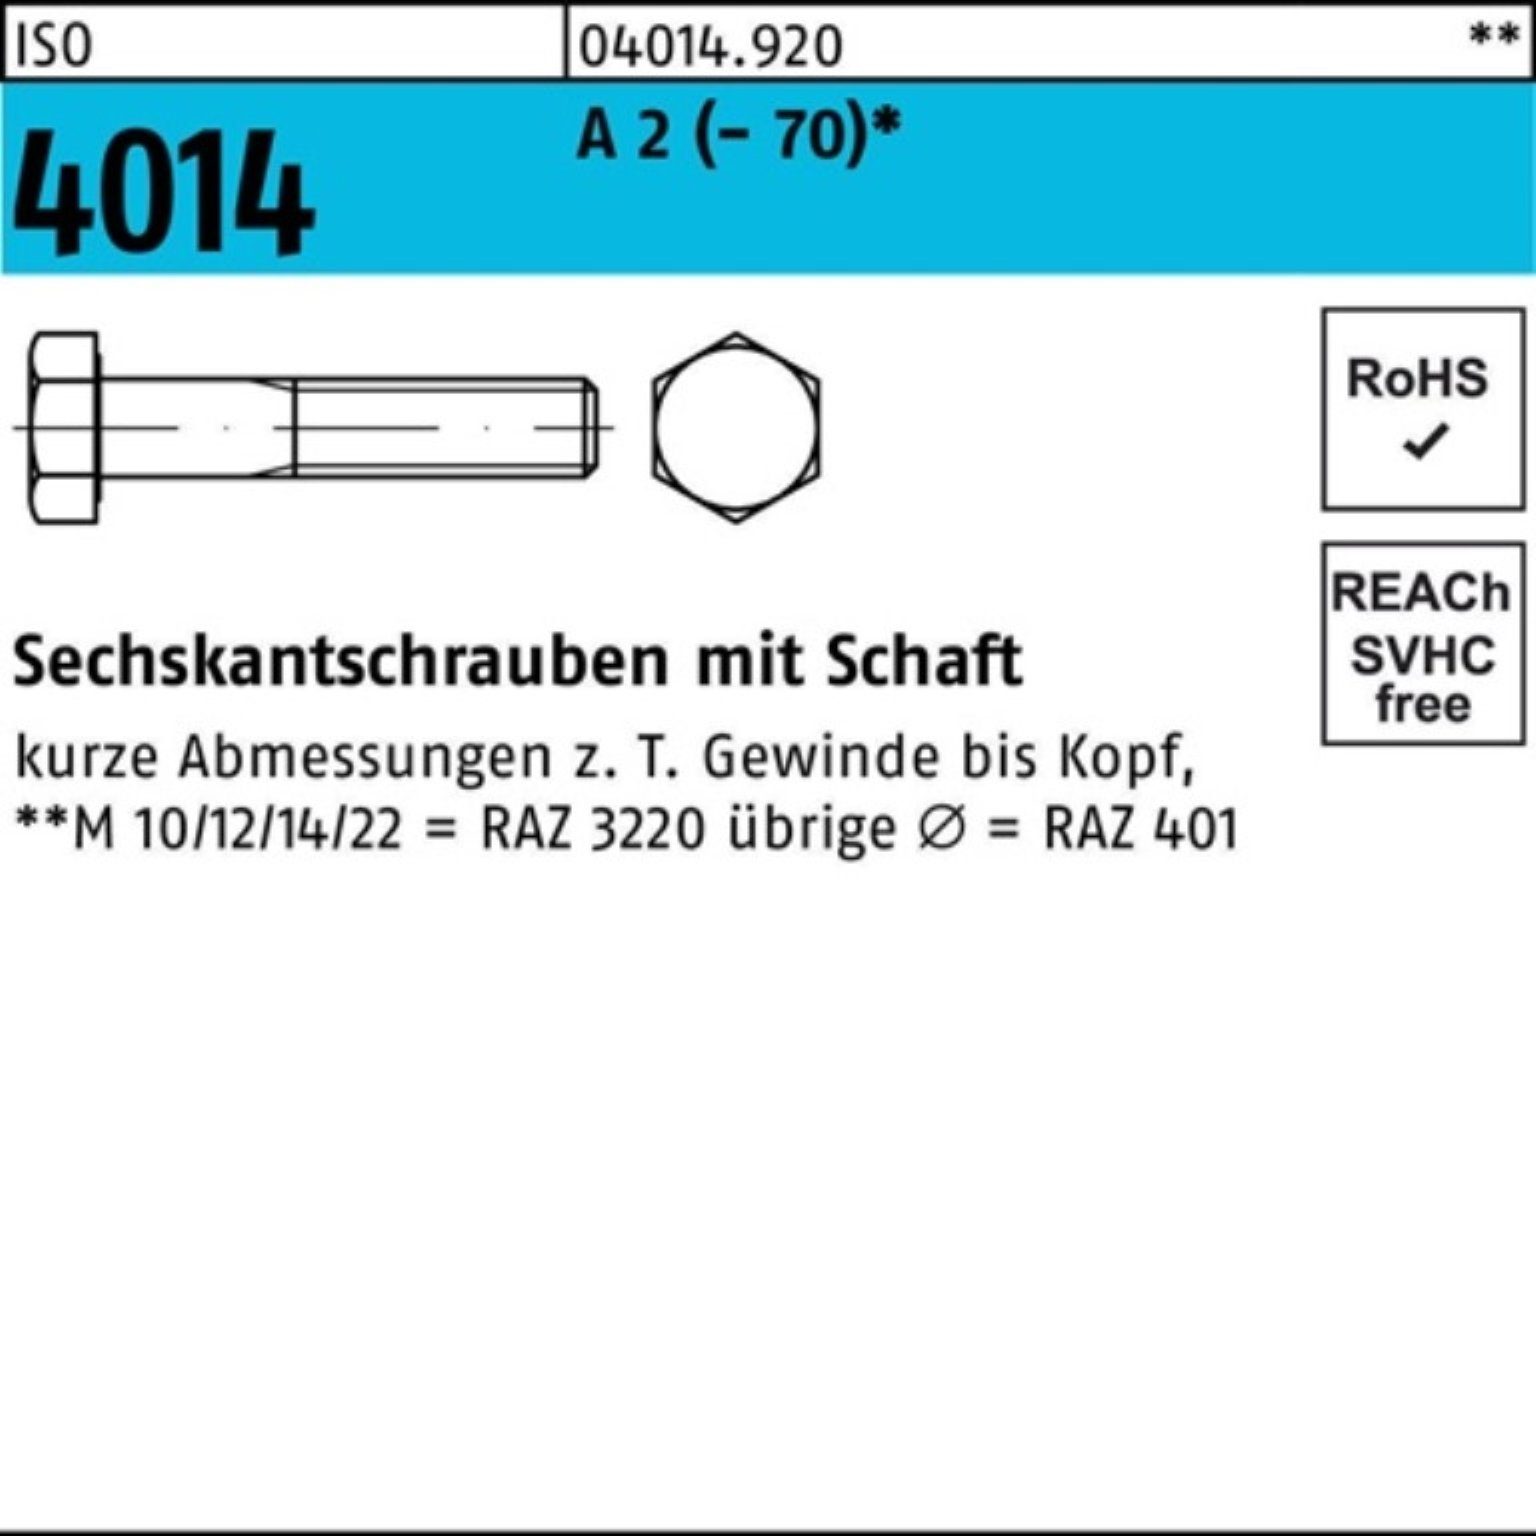 Bufab Sechskantschraube 100er Pack Sechskantschraube ISO 4014 Schaft M5x 100 A 2 (70) 100 St